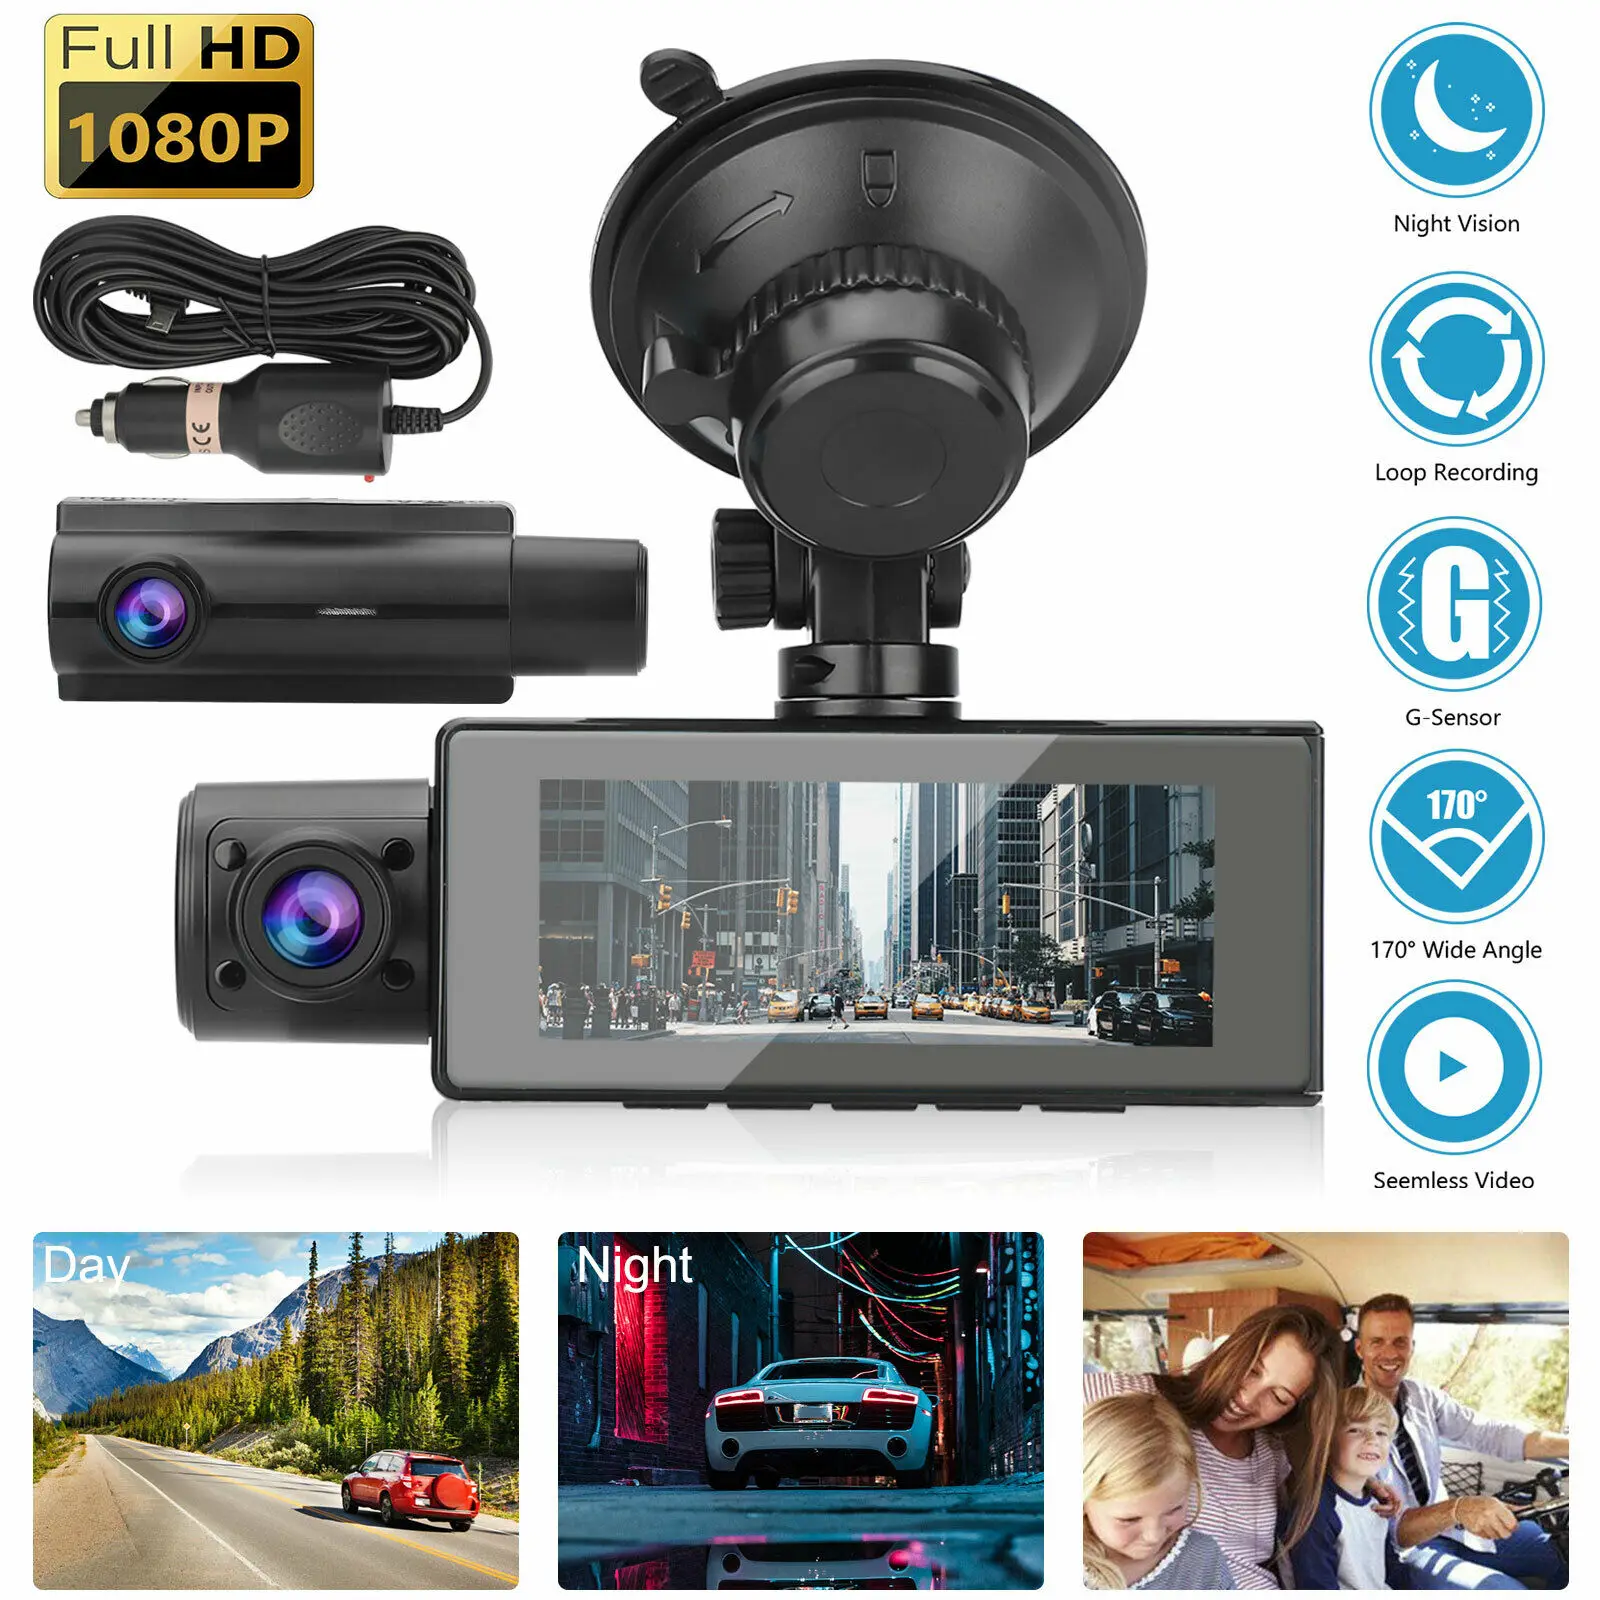 FHD Dual Lens 1080P Dash Cam Car DVR 3 Inch IPS Car Camera Front and Inside Camera Video Recorder Dashcam Night Vision G-sensor